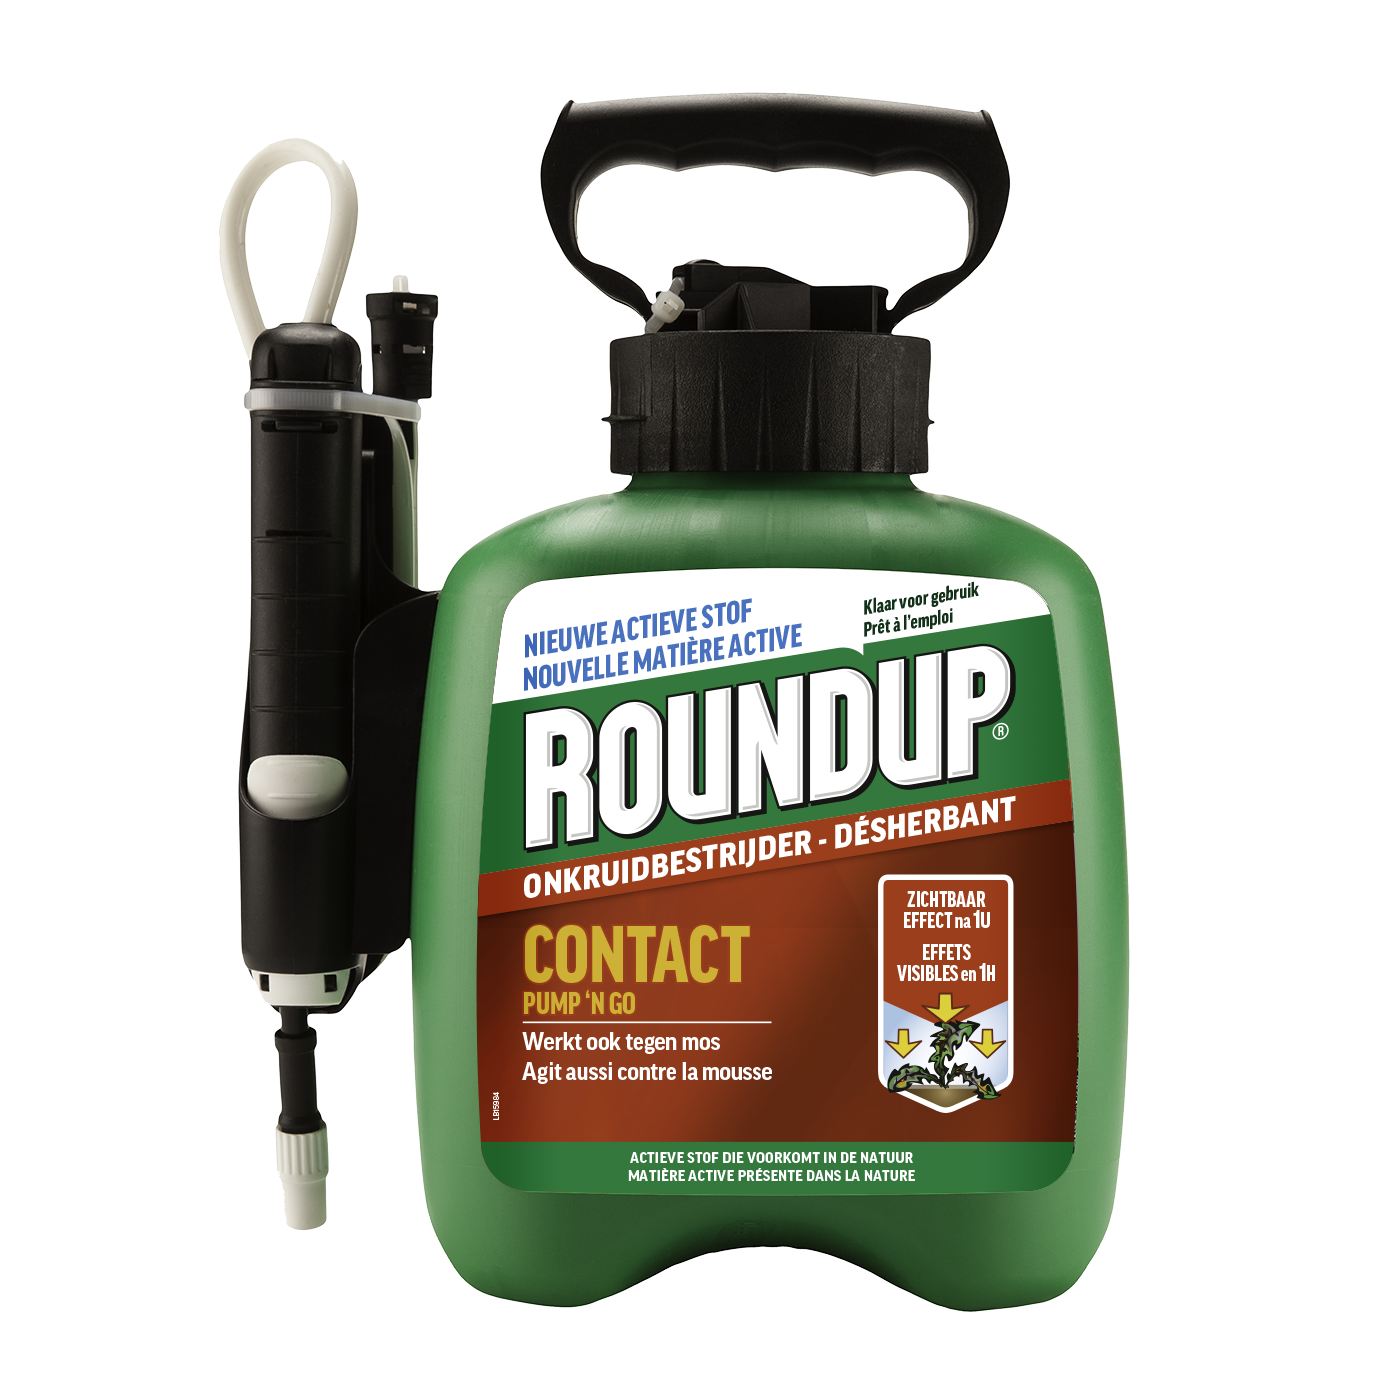 Roundup Rapid Concentré pour allées 270 ml